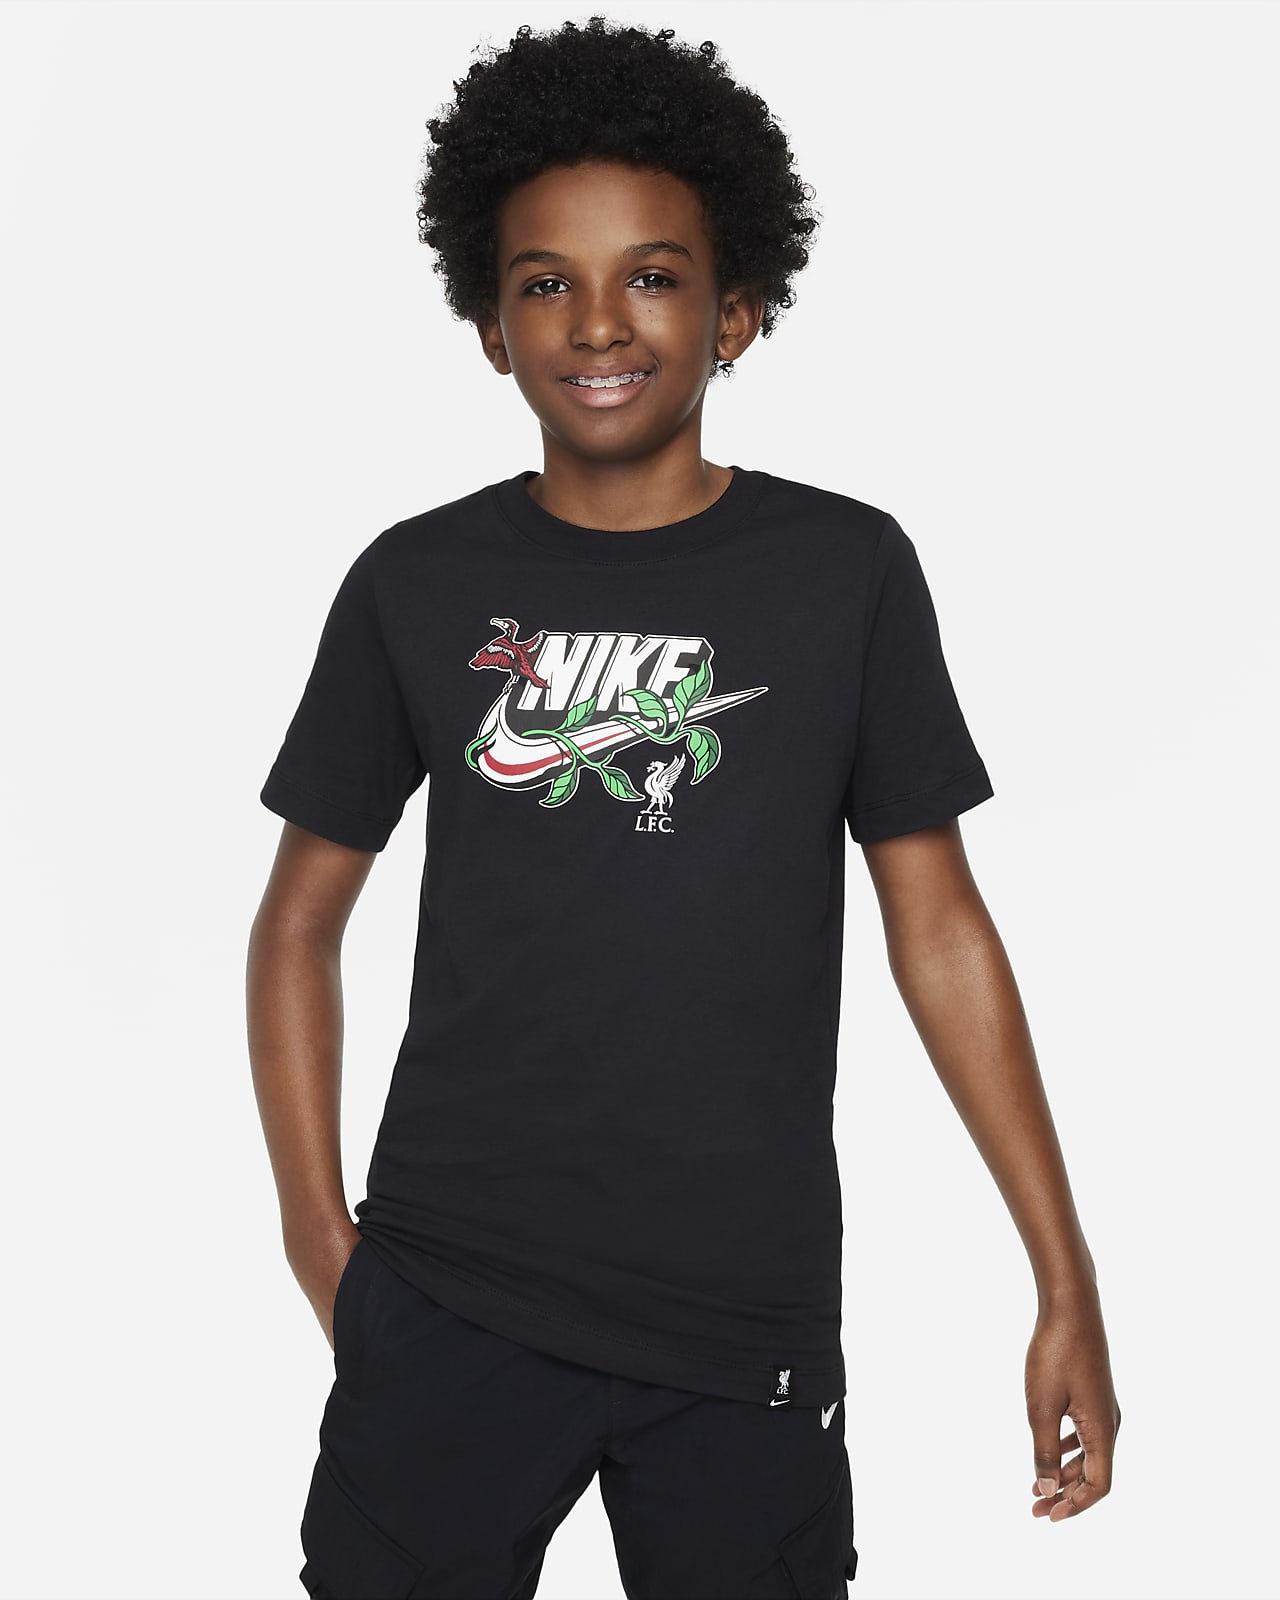 Liverpool FC Big Kids' Nike T-Shirt